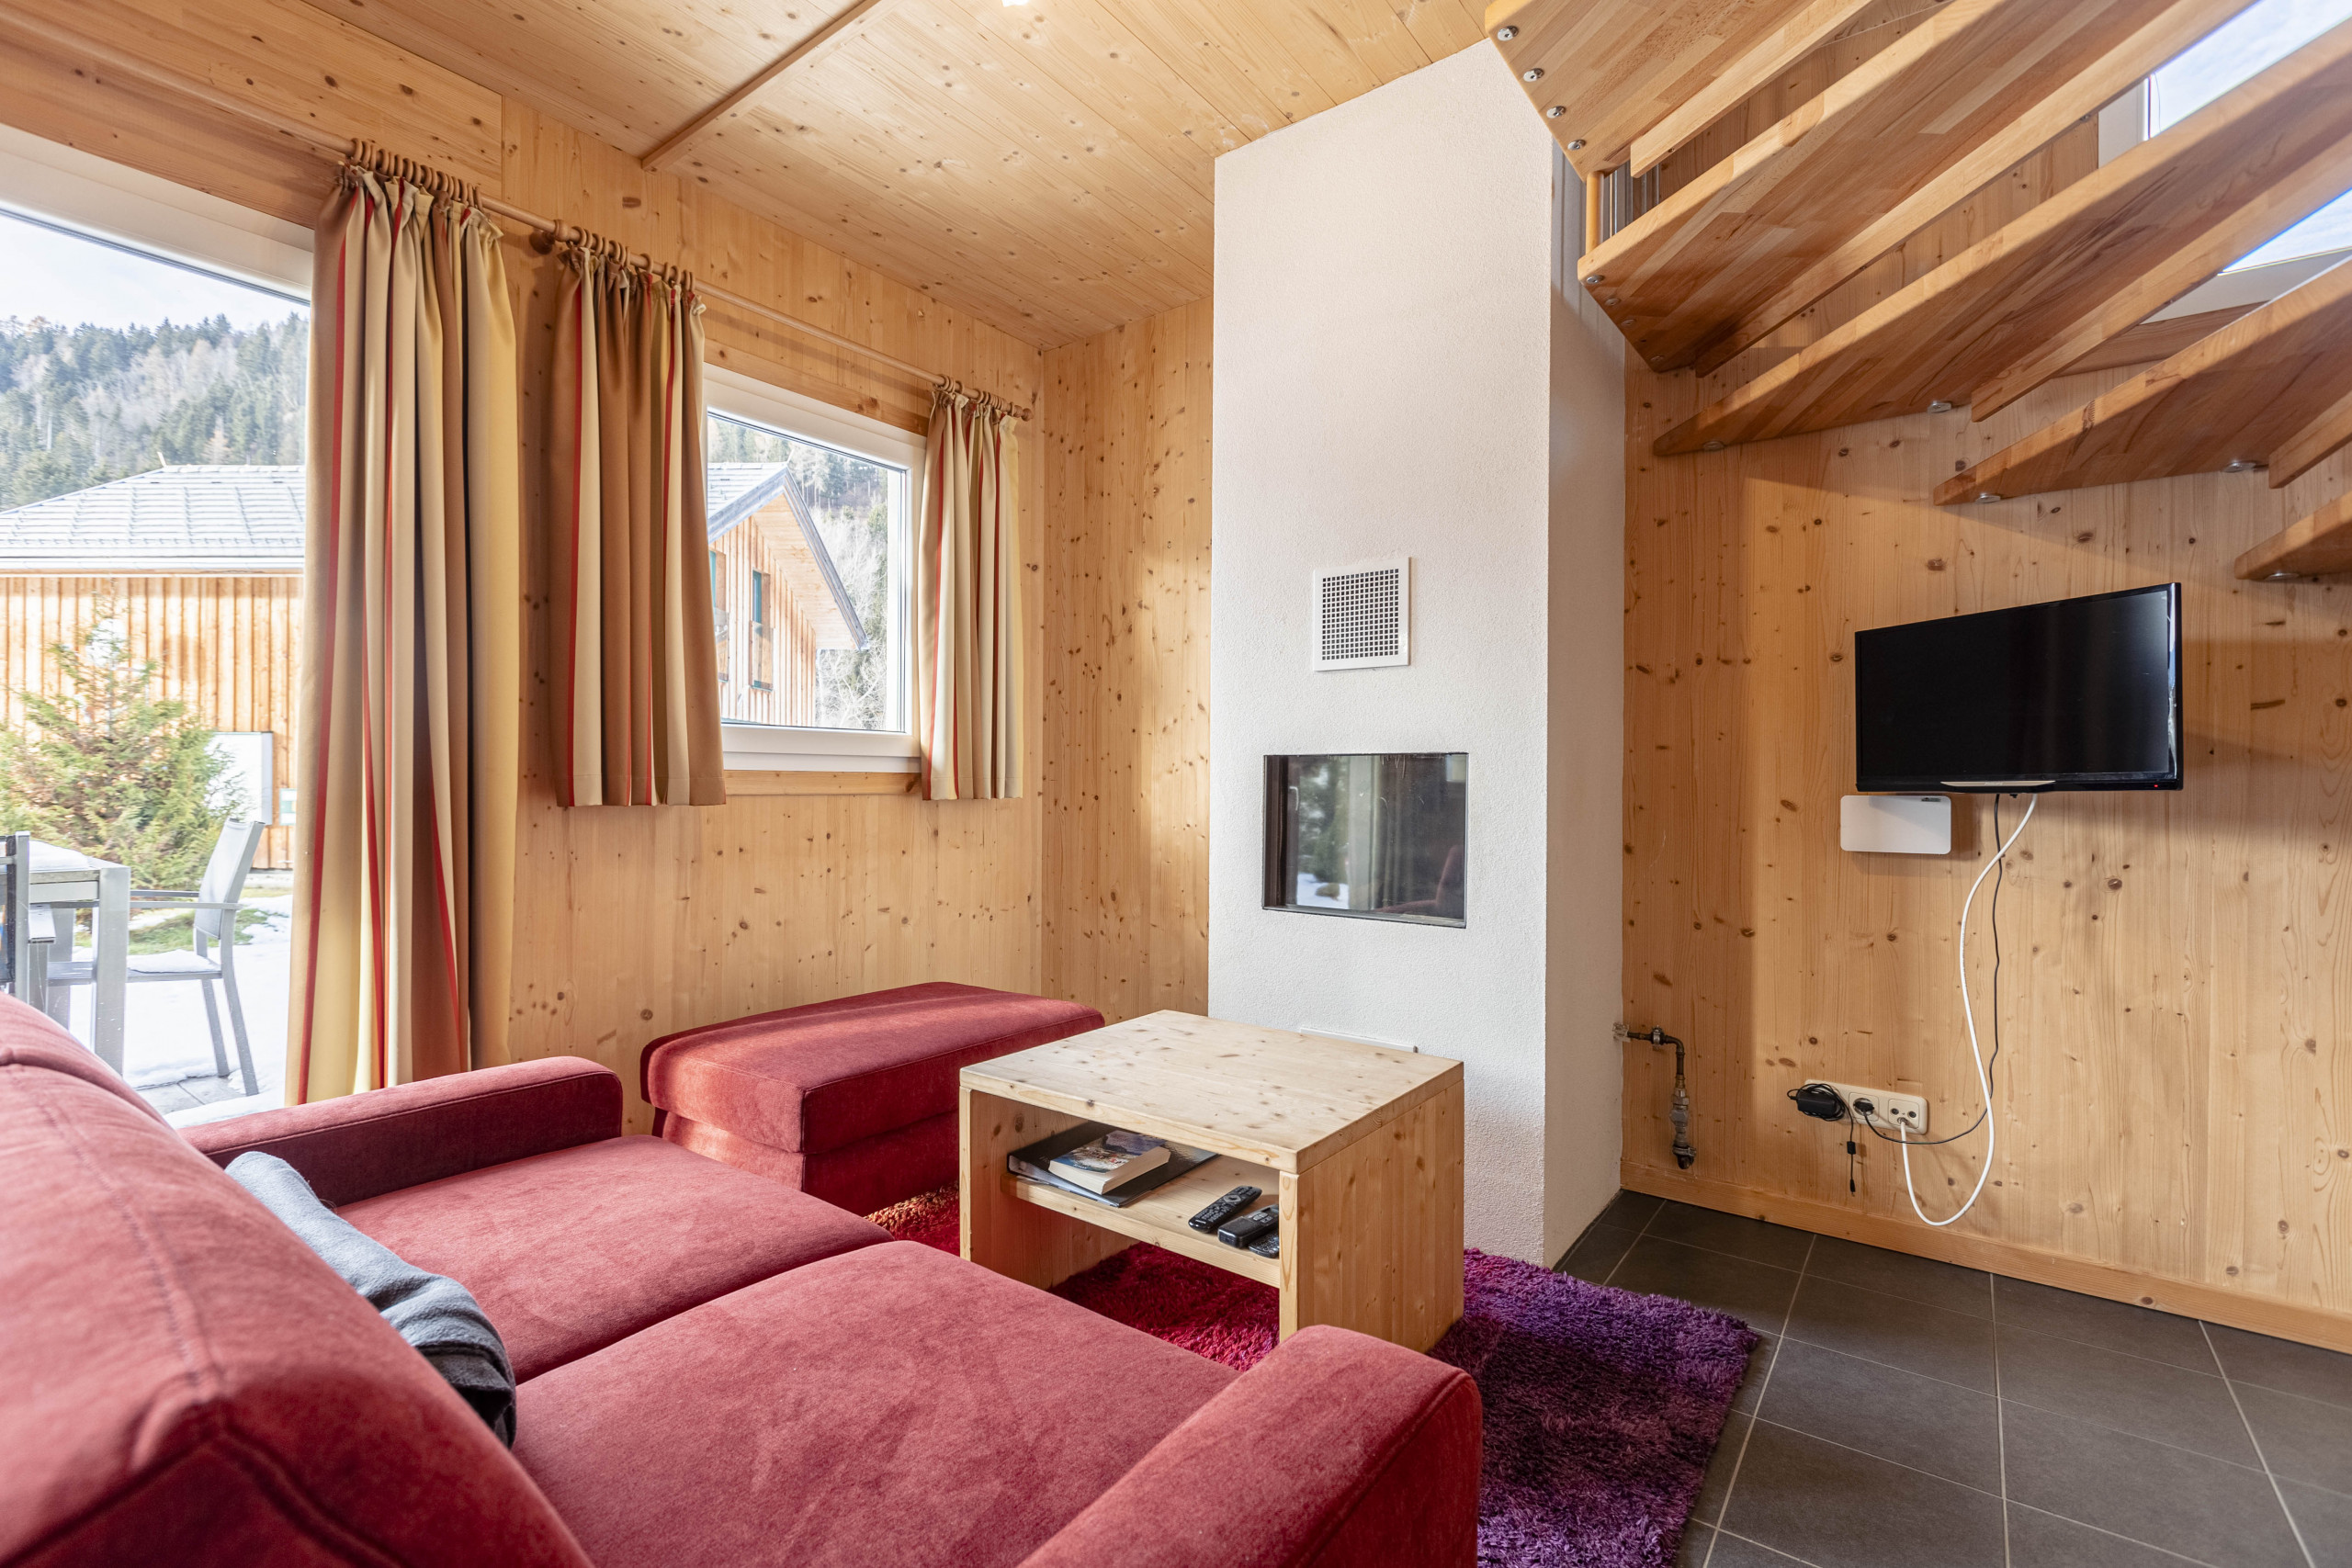  in Murau - Ferienhaus # 21b mit 3 Schlafzimmern & IR-Sauna